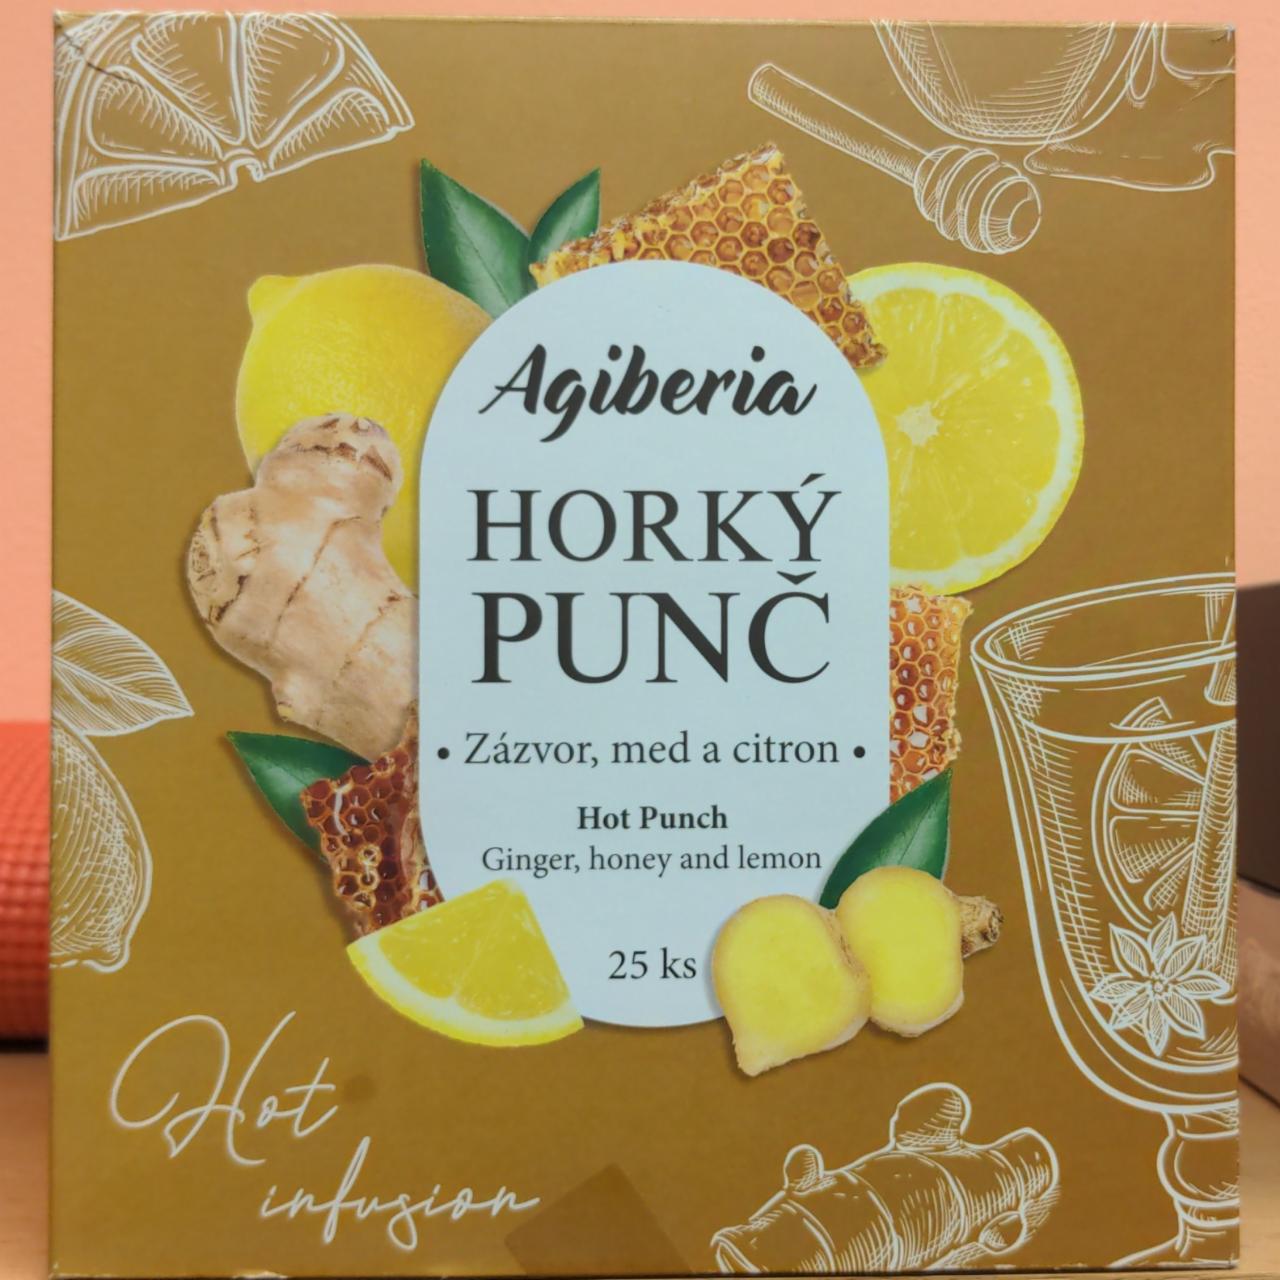 Fotografie - Horký punč Zázvor, med a citron Agiberia